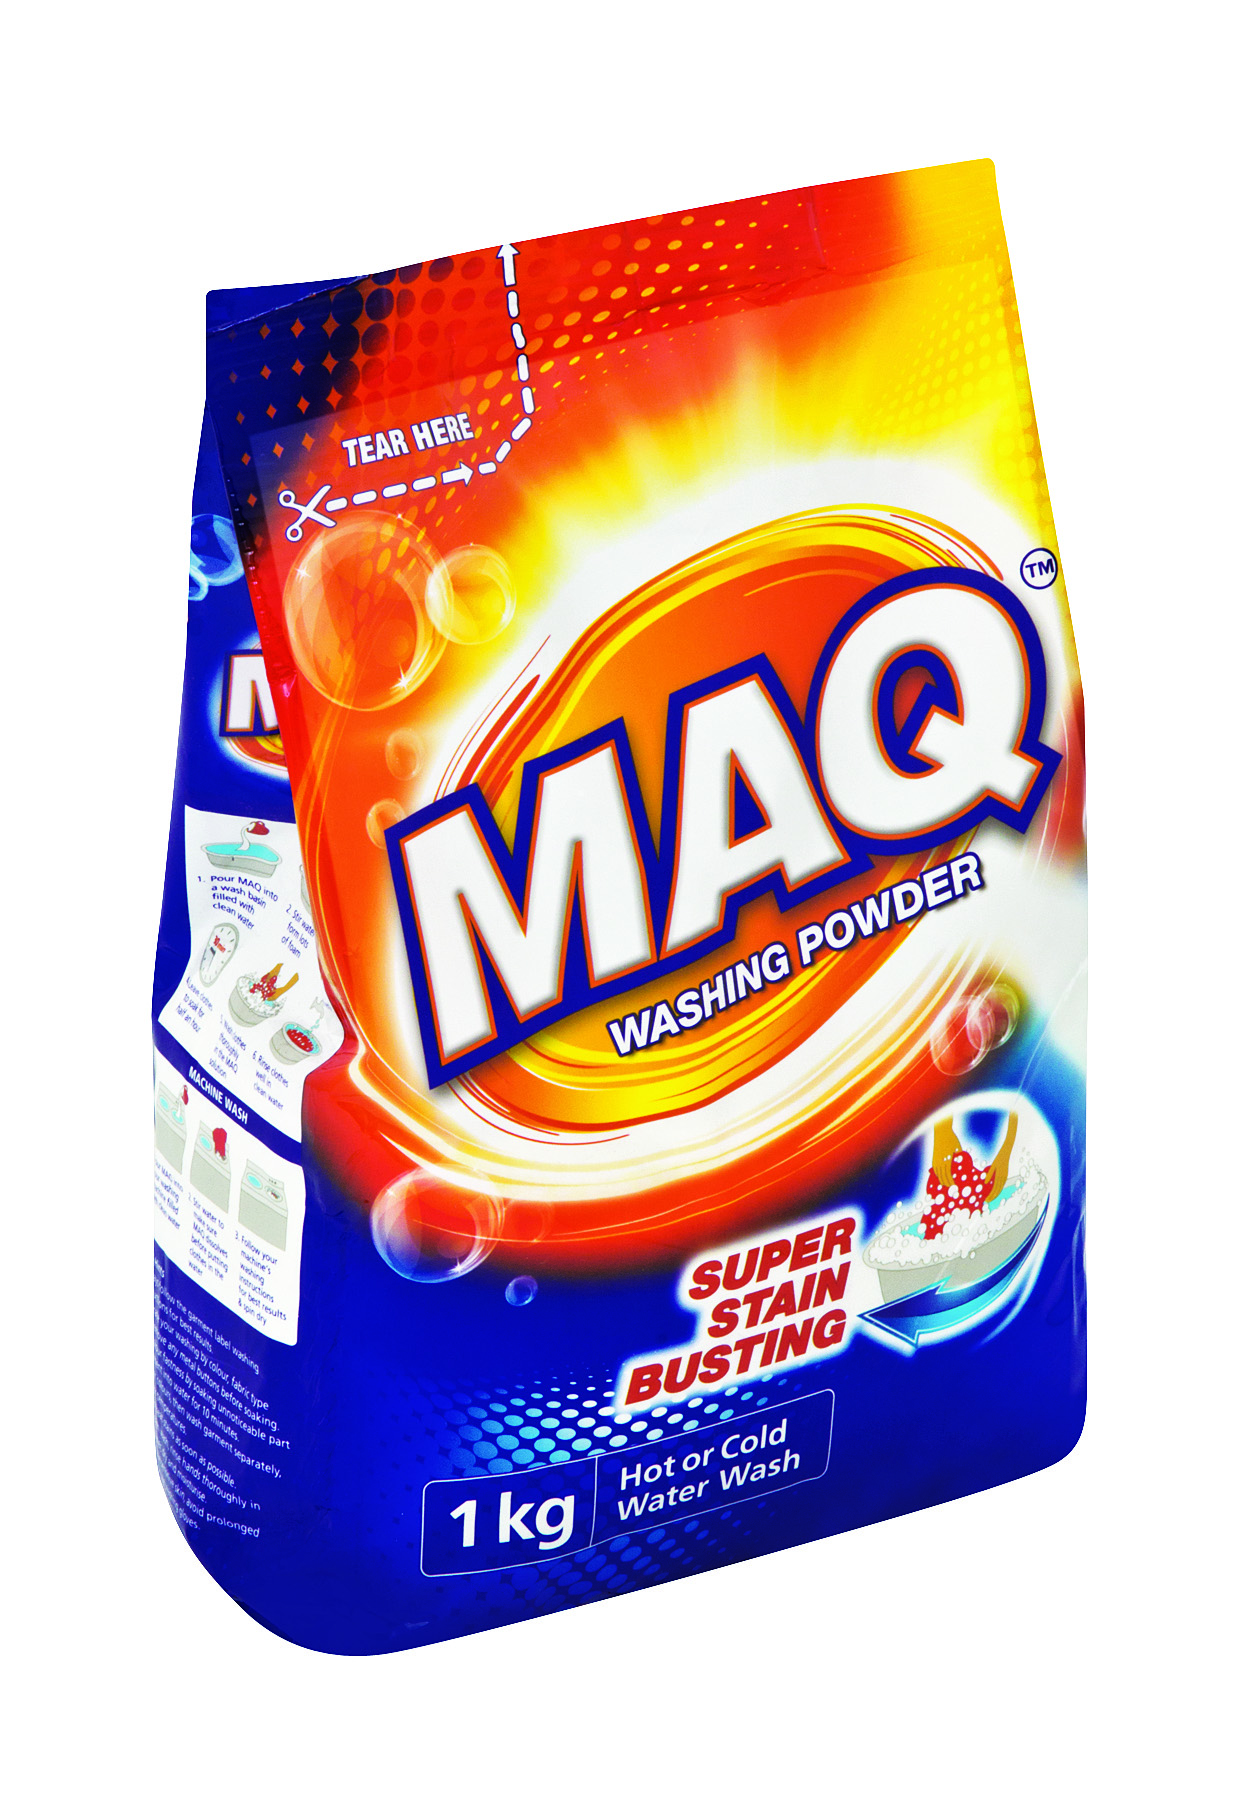 MAQ REG WASHING POWDER FLEXI BAG 1KG